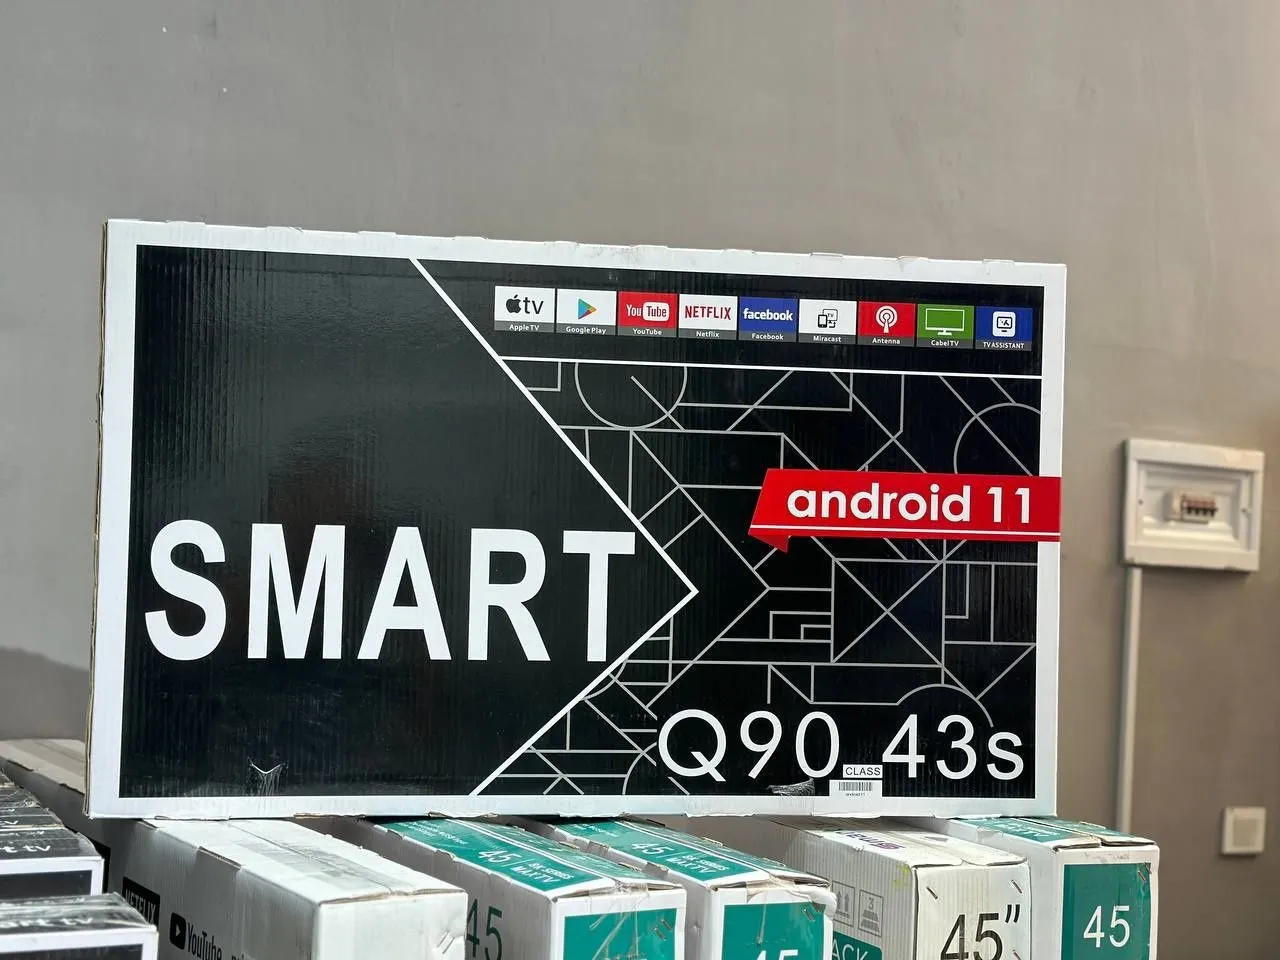 Телевизор Samsung 43" IPS Smart TV Android#2